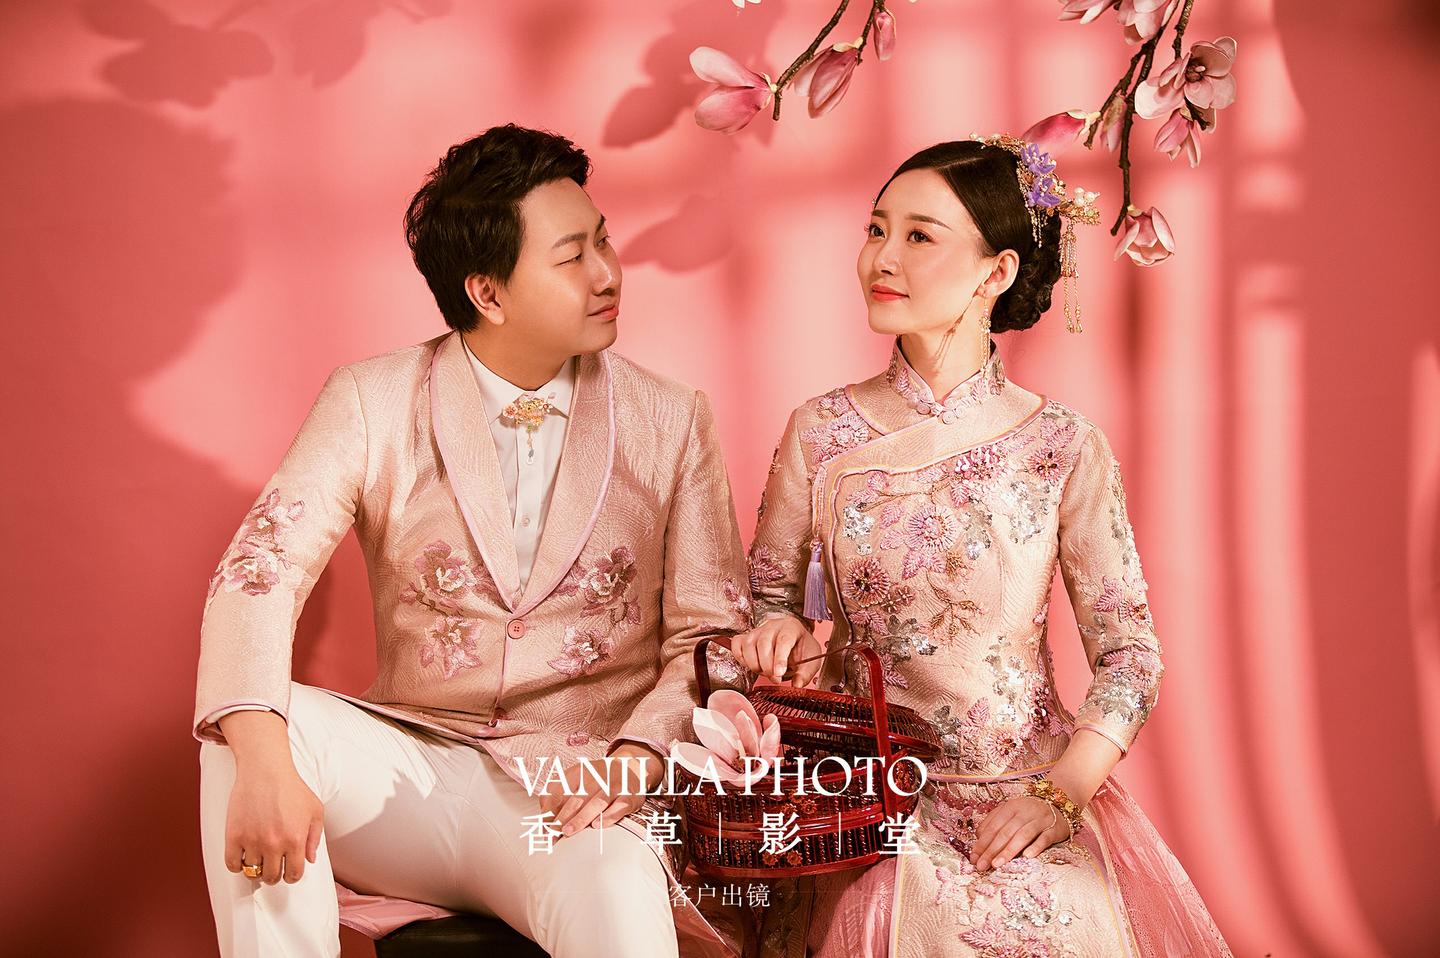 婚纱照一定要有一组中国风婚纱照不一样的中式婚纱照